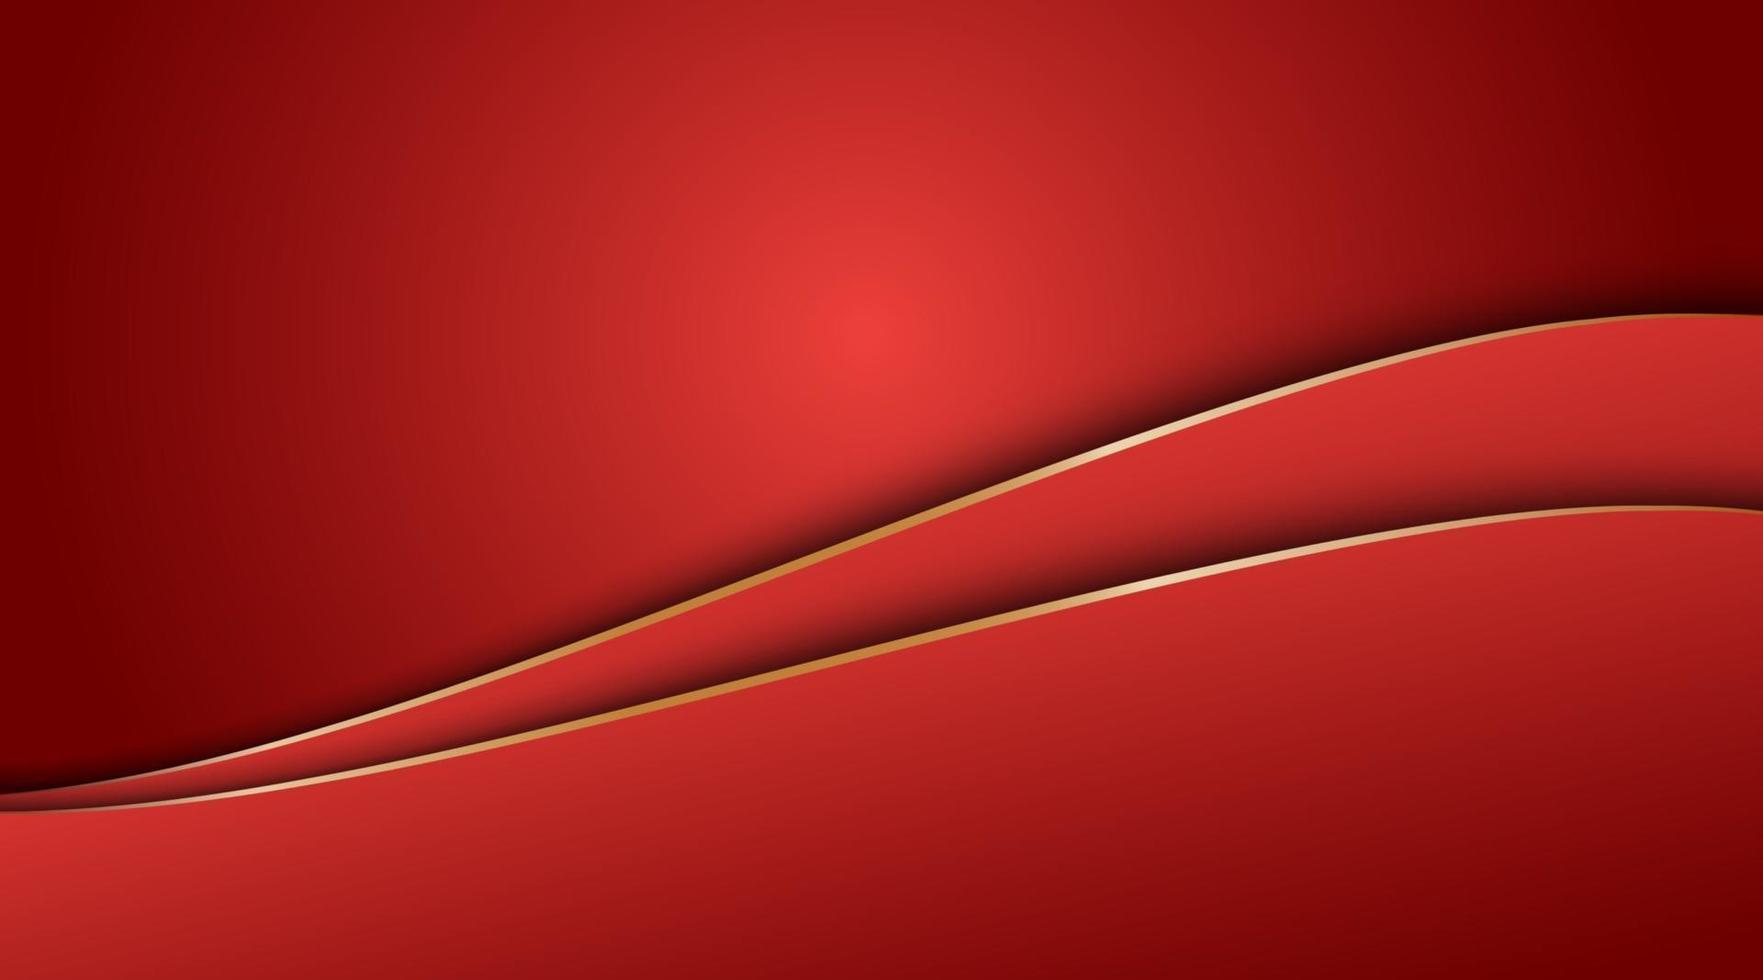 abstrait dégradé rouge et fond de courbe d'or vecteur